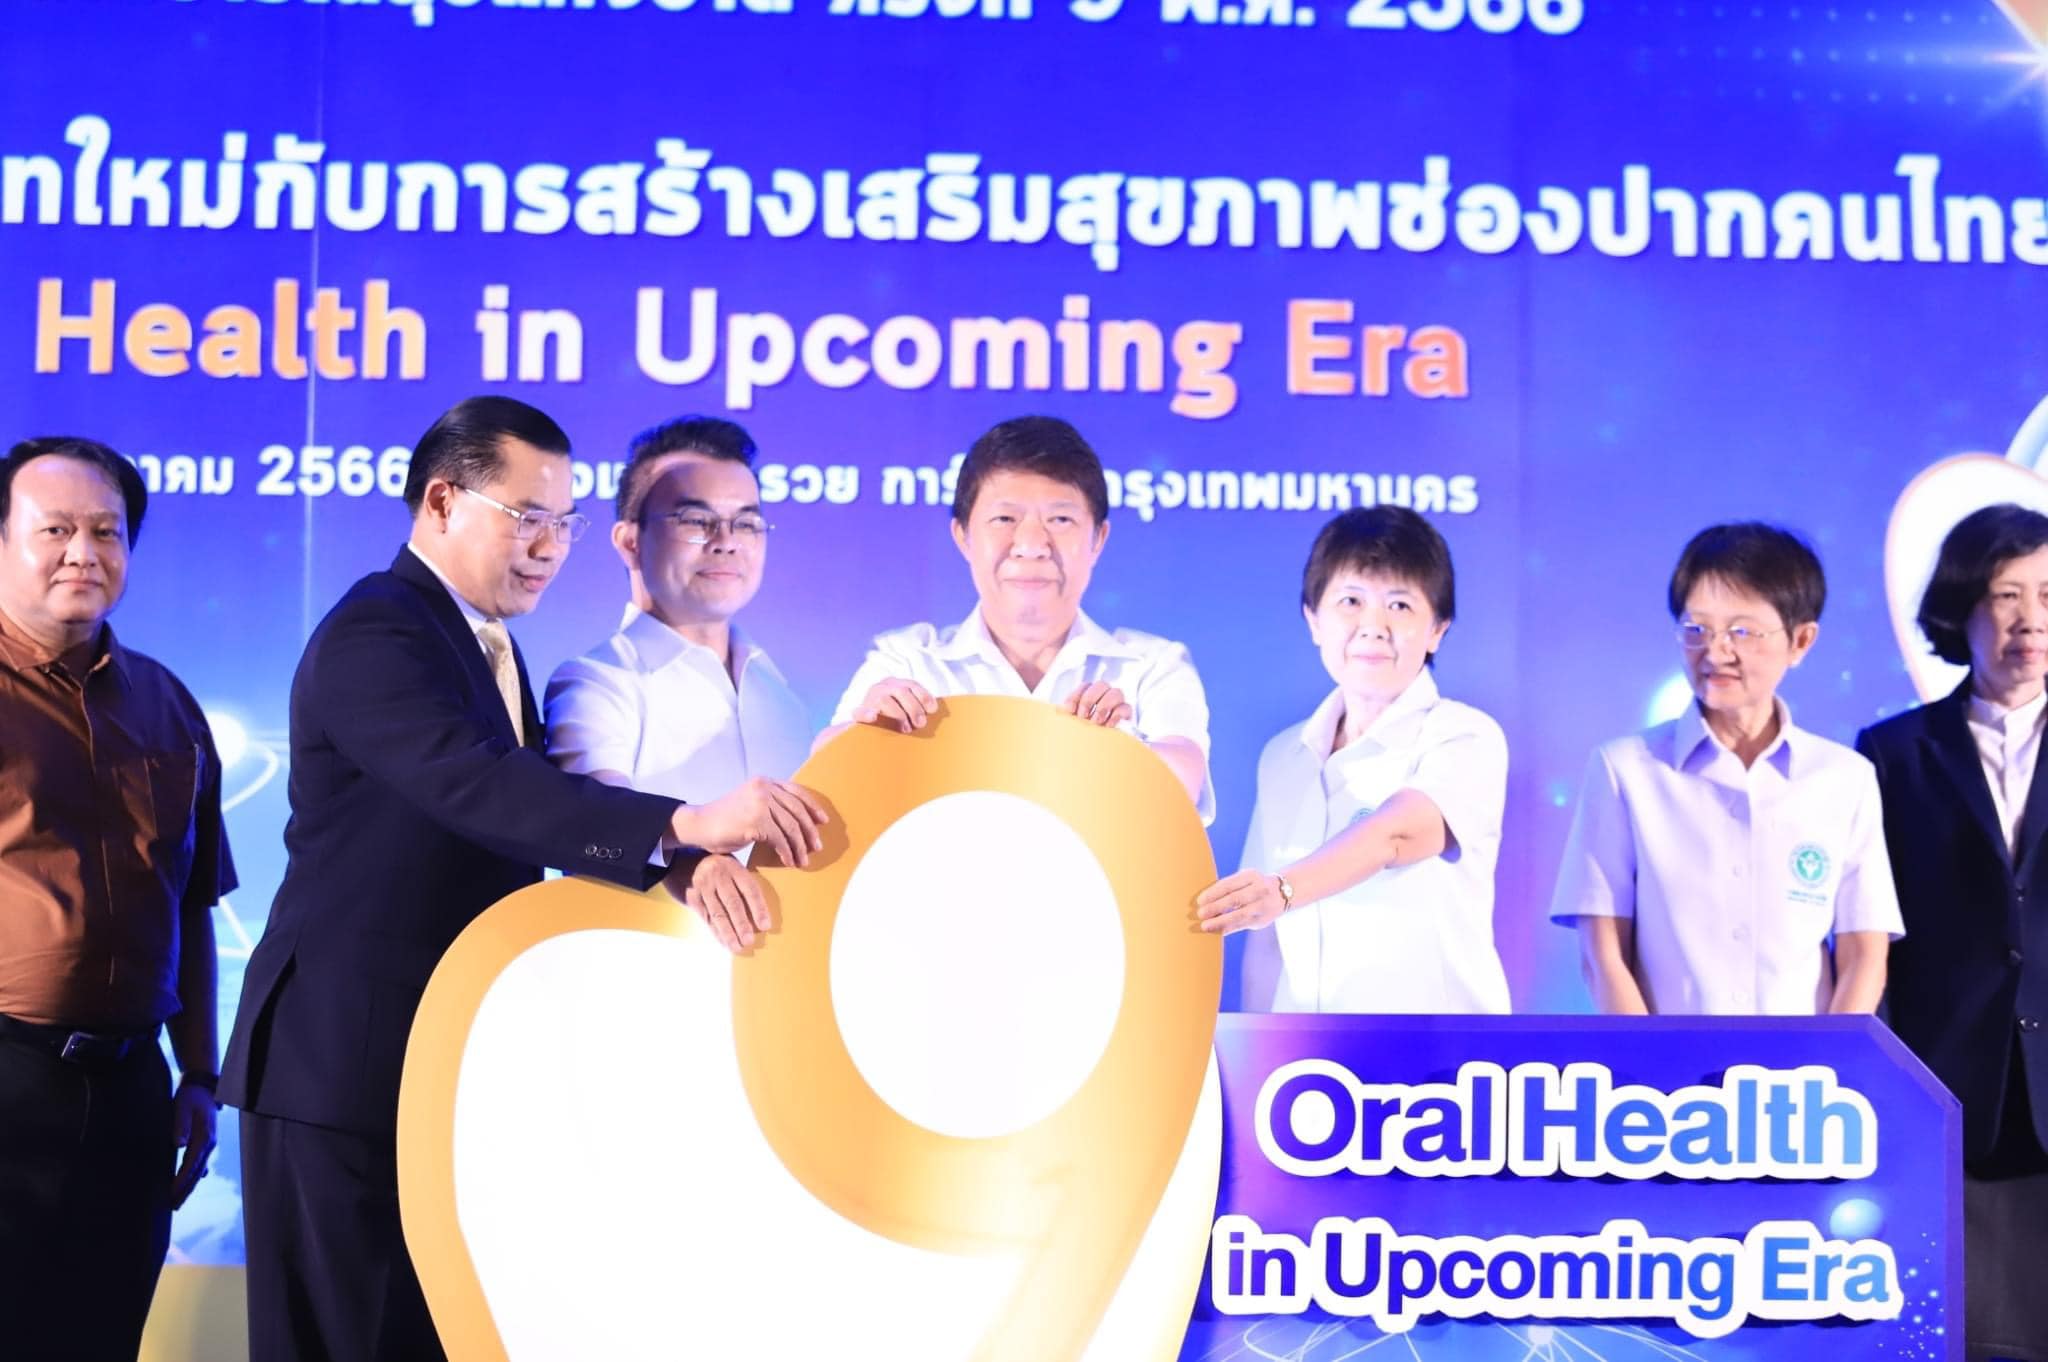 เข้าร่วมประชุมวิชาการทันตสาธารณสุขแห่งชาติ ครั้งที่ 9 พ.ศ. 2566 ภายใต้แนวคิด “บริบทใหม่กับการสร้างเสริมสุขภาพช่องปากคนไทย : Oral Health in Upcoming Era”